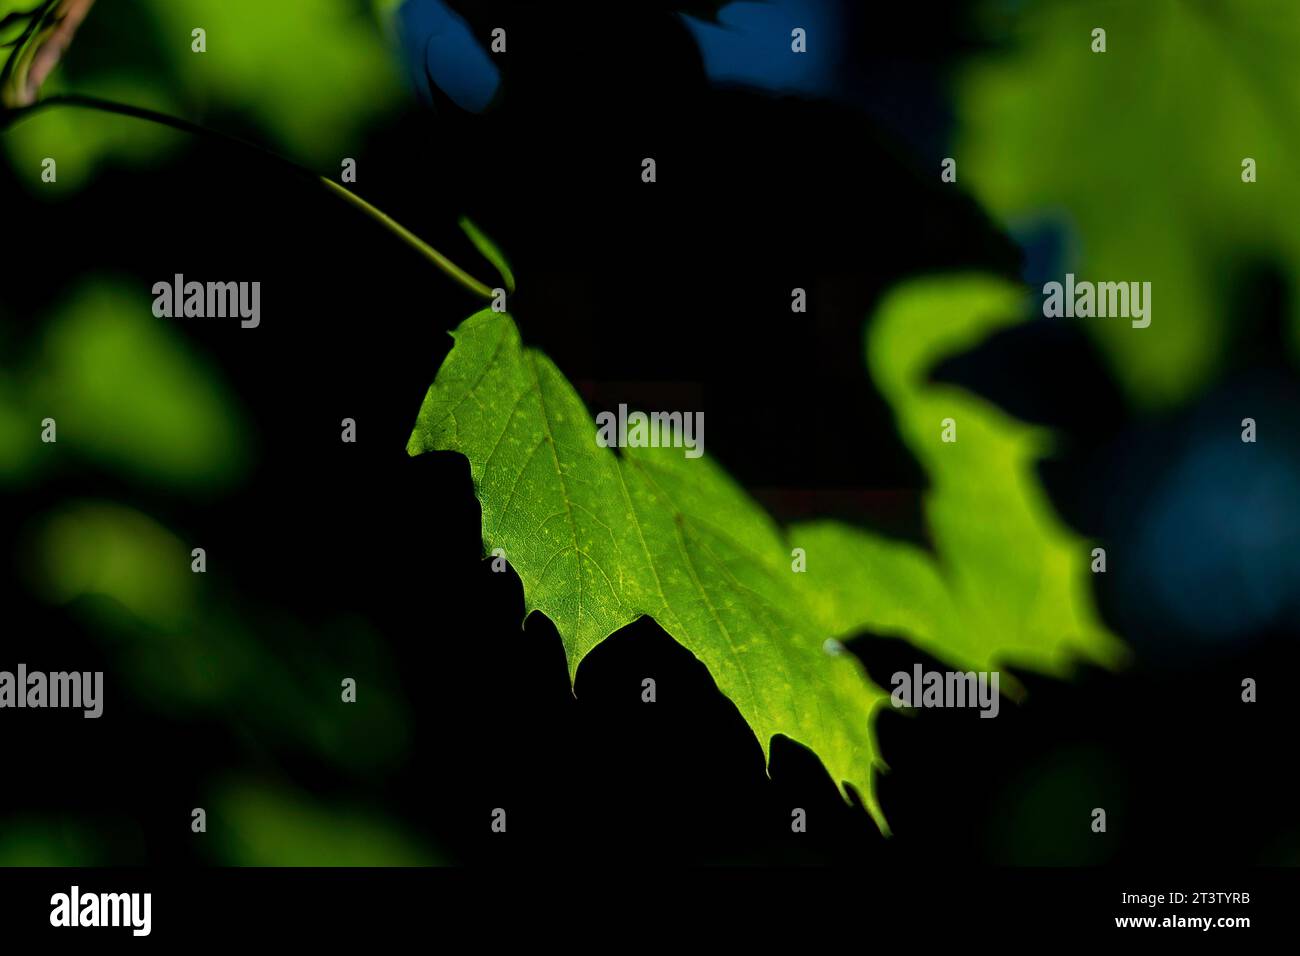 Image haute résolution isolée des feuilles vertes dans la lumière directe du soleil créant des ombres et des textures naturelles différentes Banque D'Images